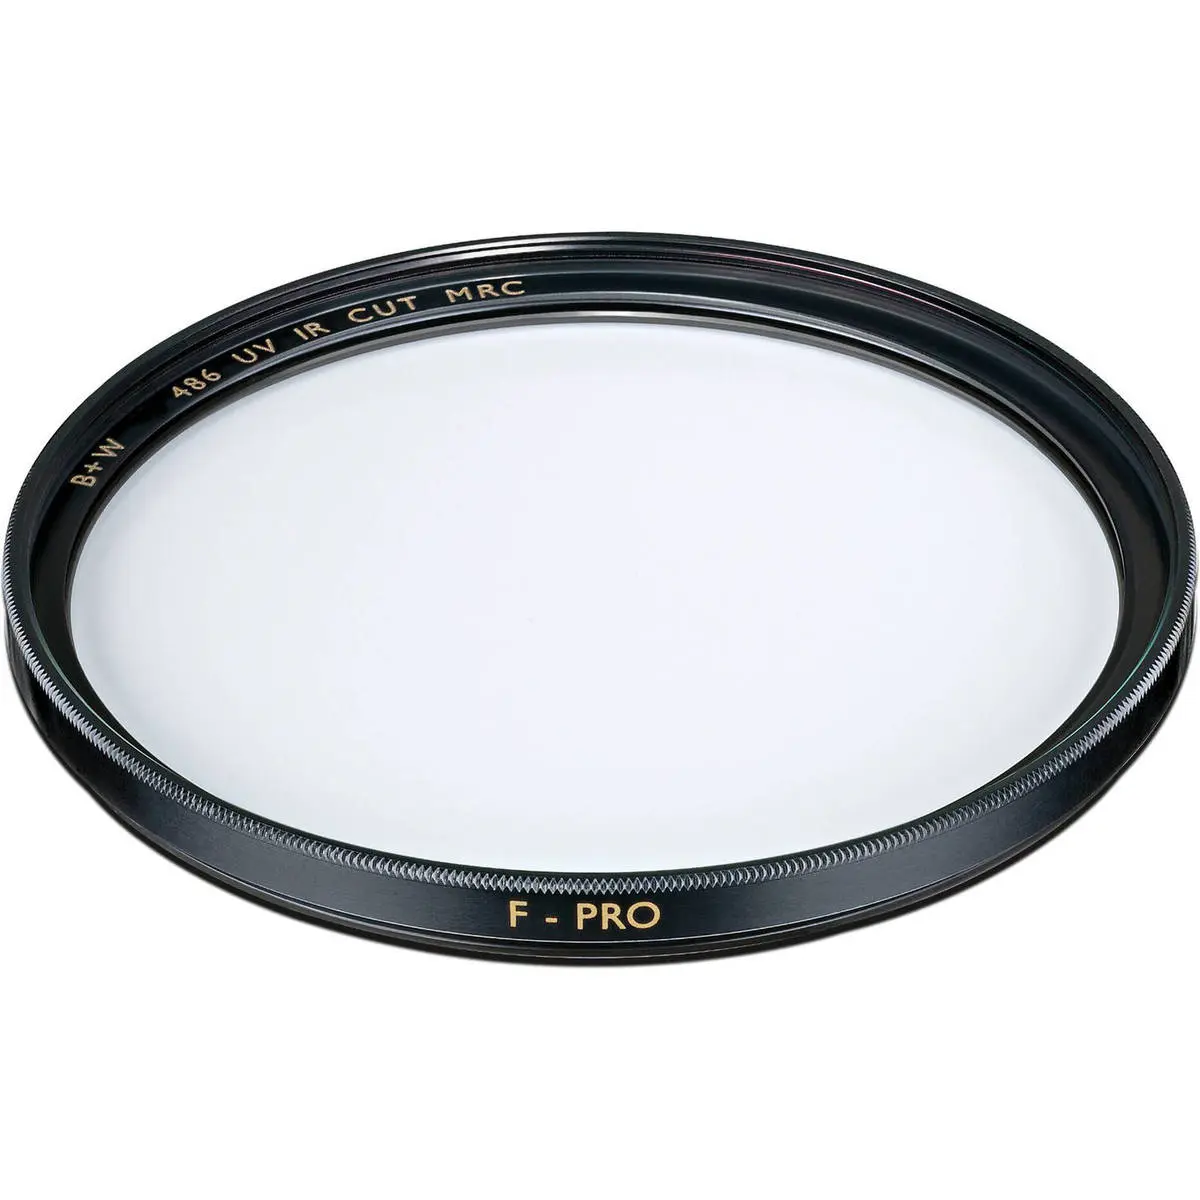 B+W F-Pro 486 UV/IR cut MRC 105mm filter (1070173)